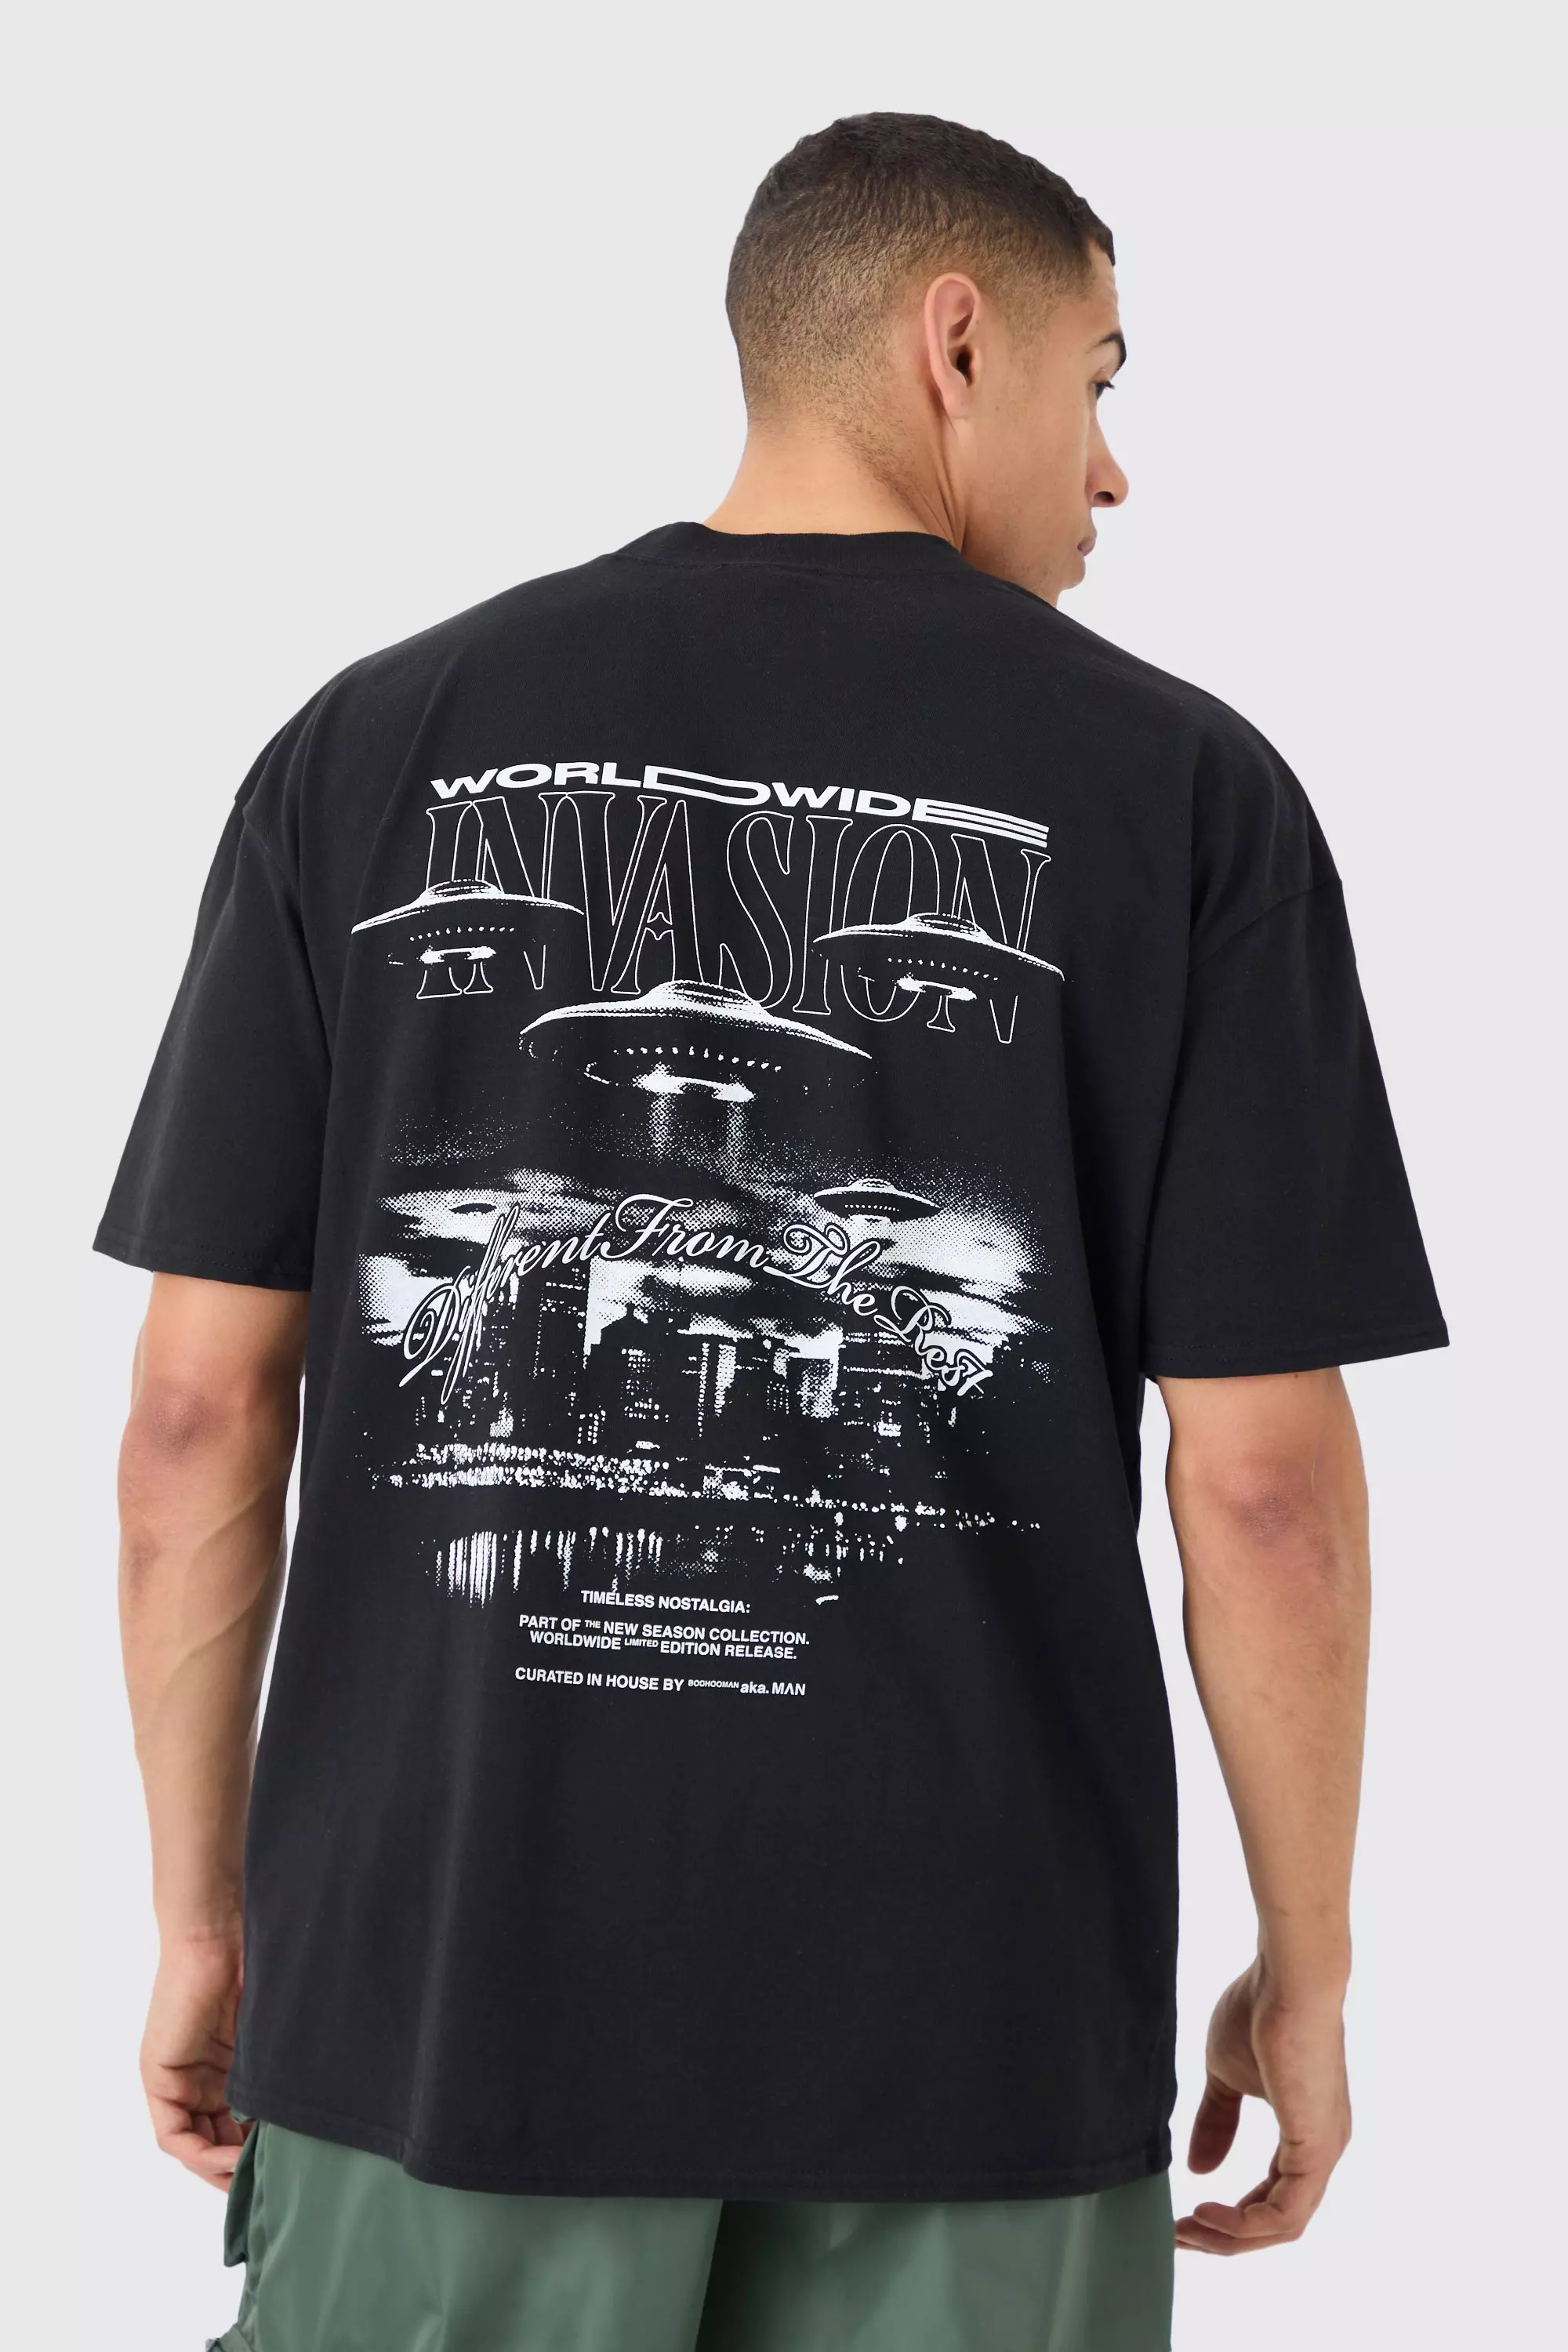 Oversized Worldwide Spaceship T-shirt Black